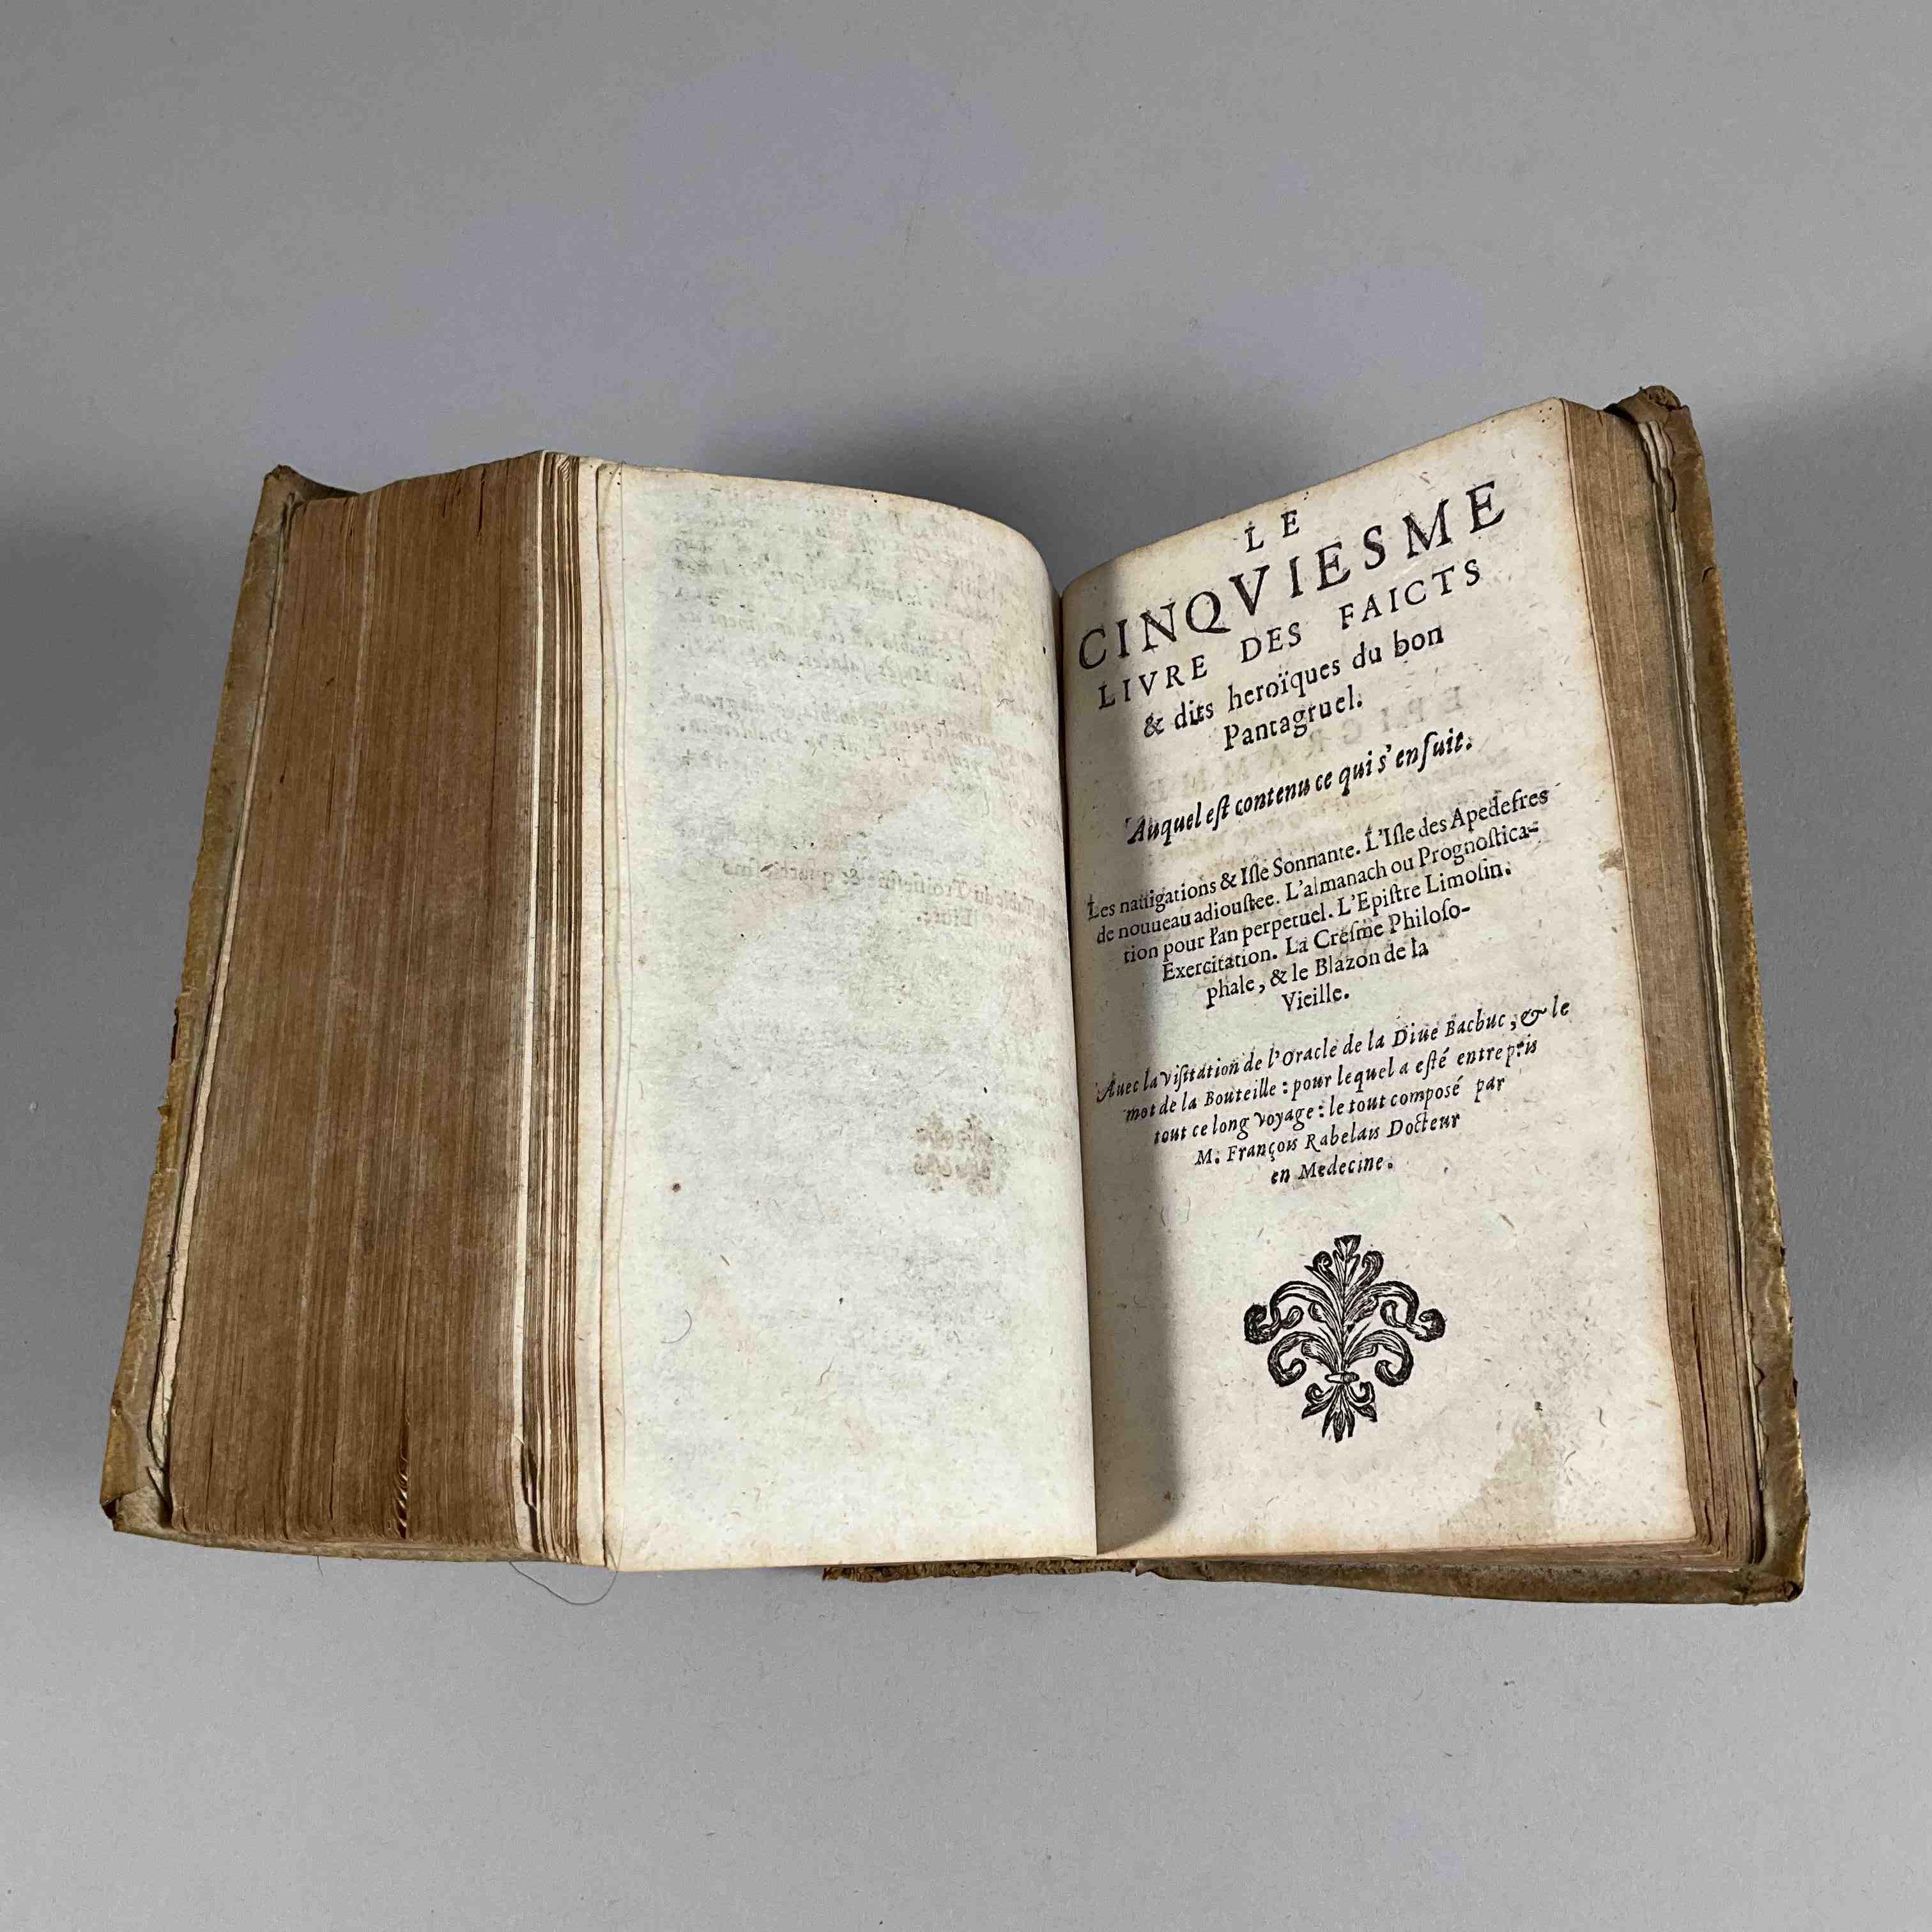 Oeuvres de Rabelais.
Probablement une édition début XVIIe, avec une collation...